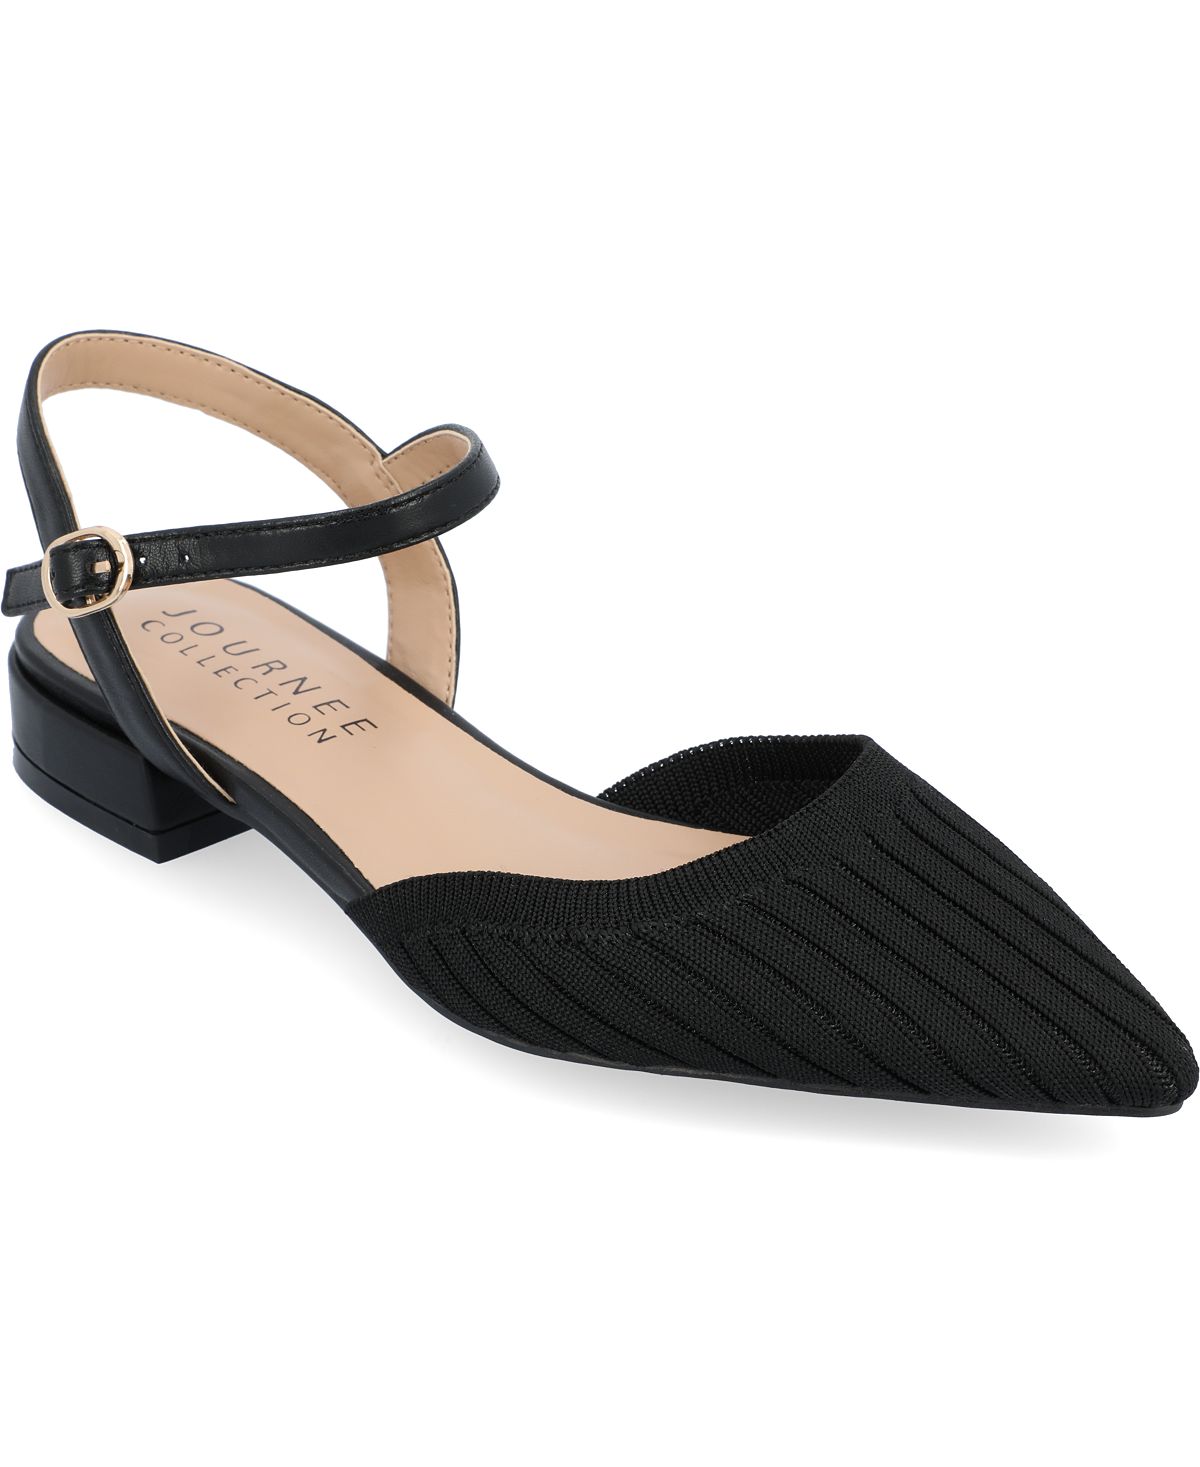 Женская трикотажная обувь на плоской подошве Ansley Journee Collection, черный